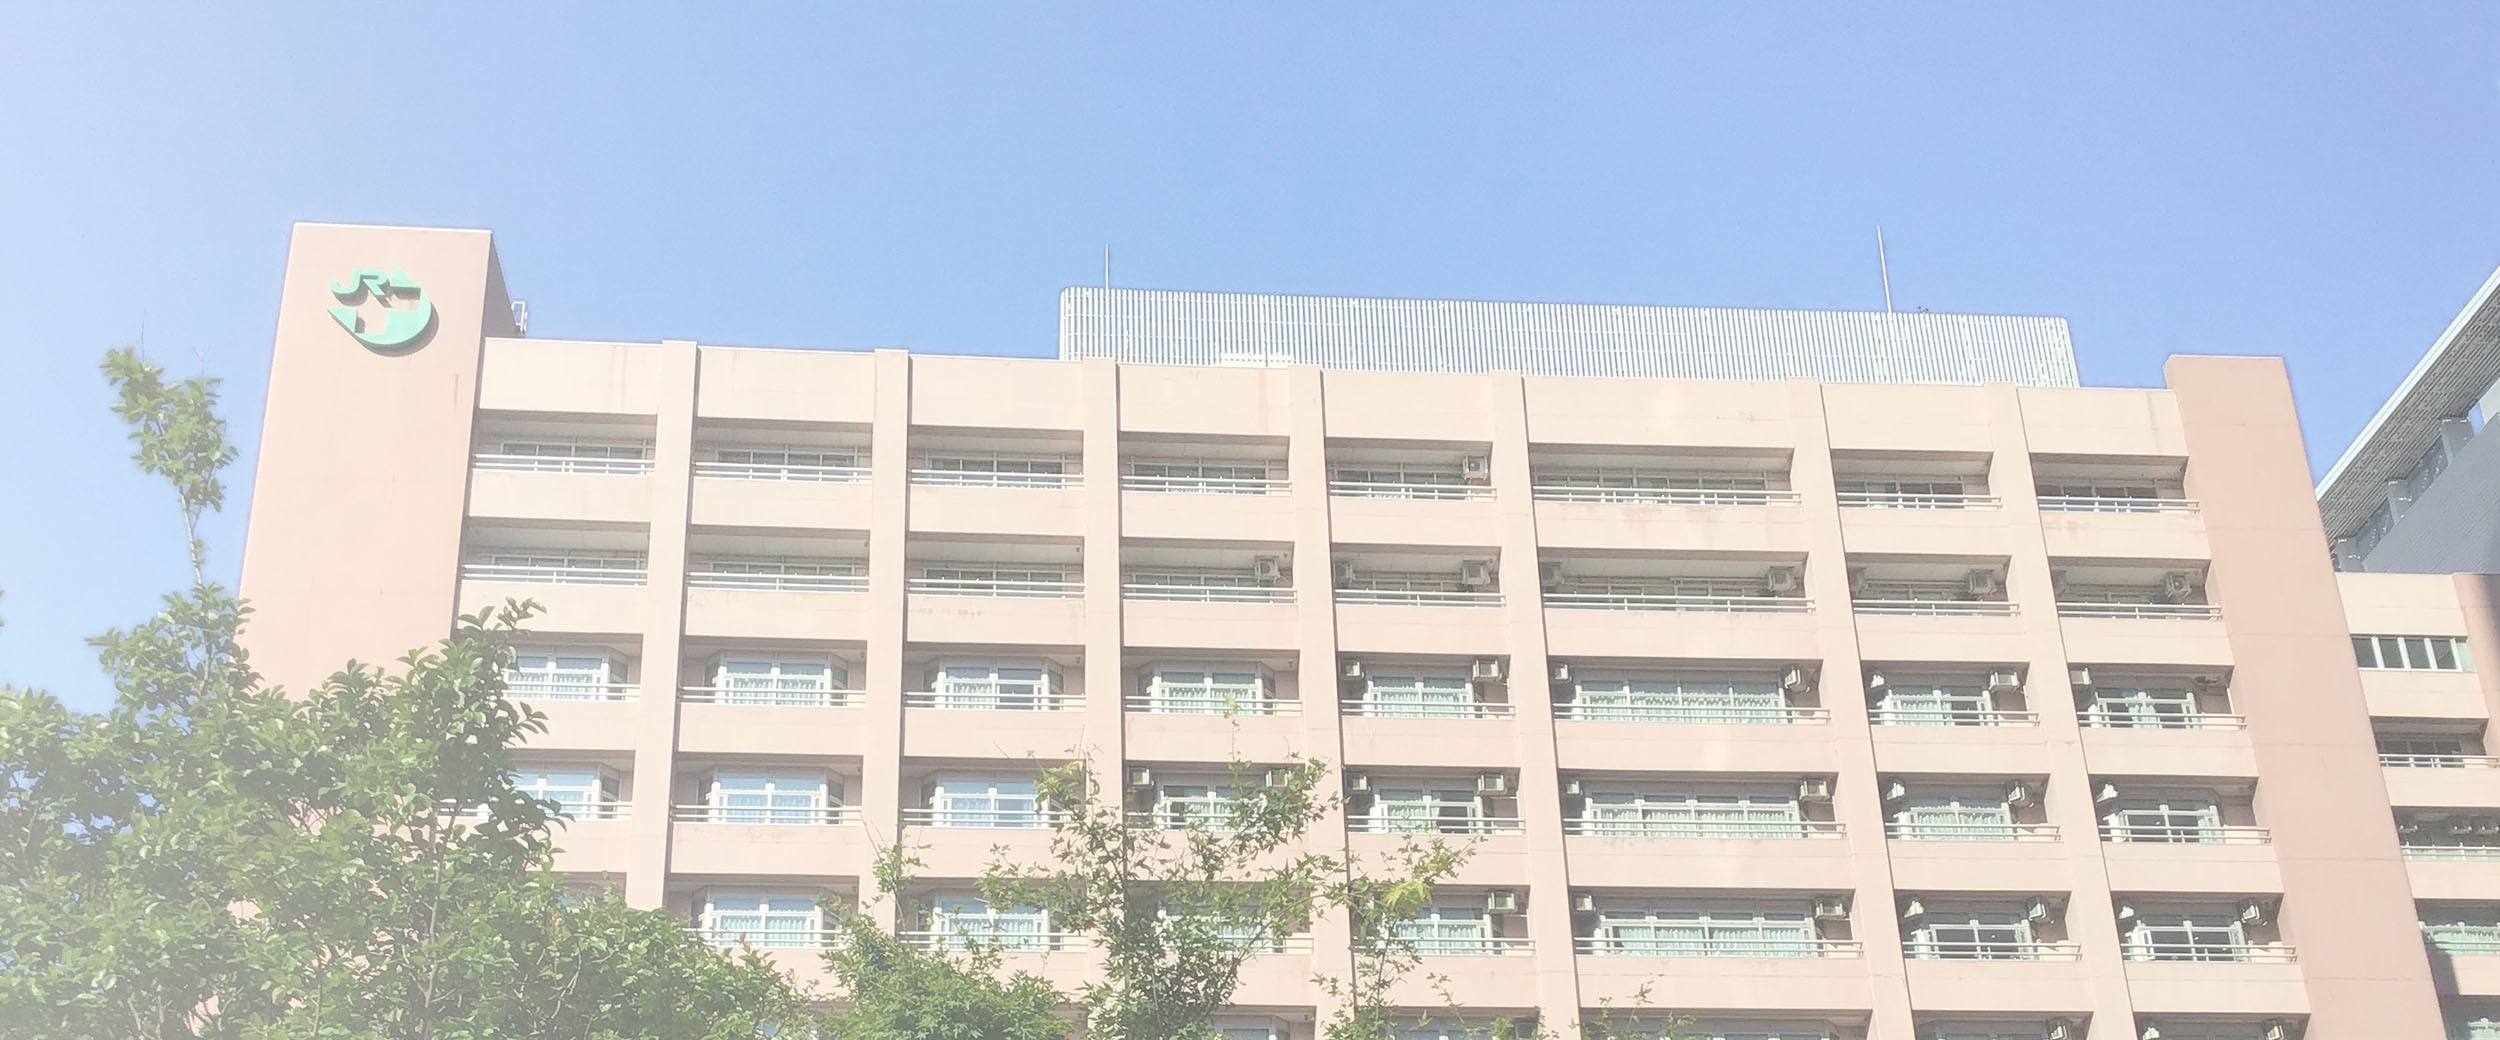 中央 西 病院 東京 コロナ 総合